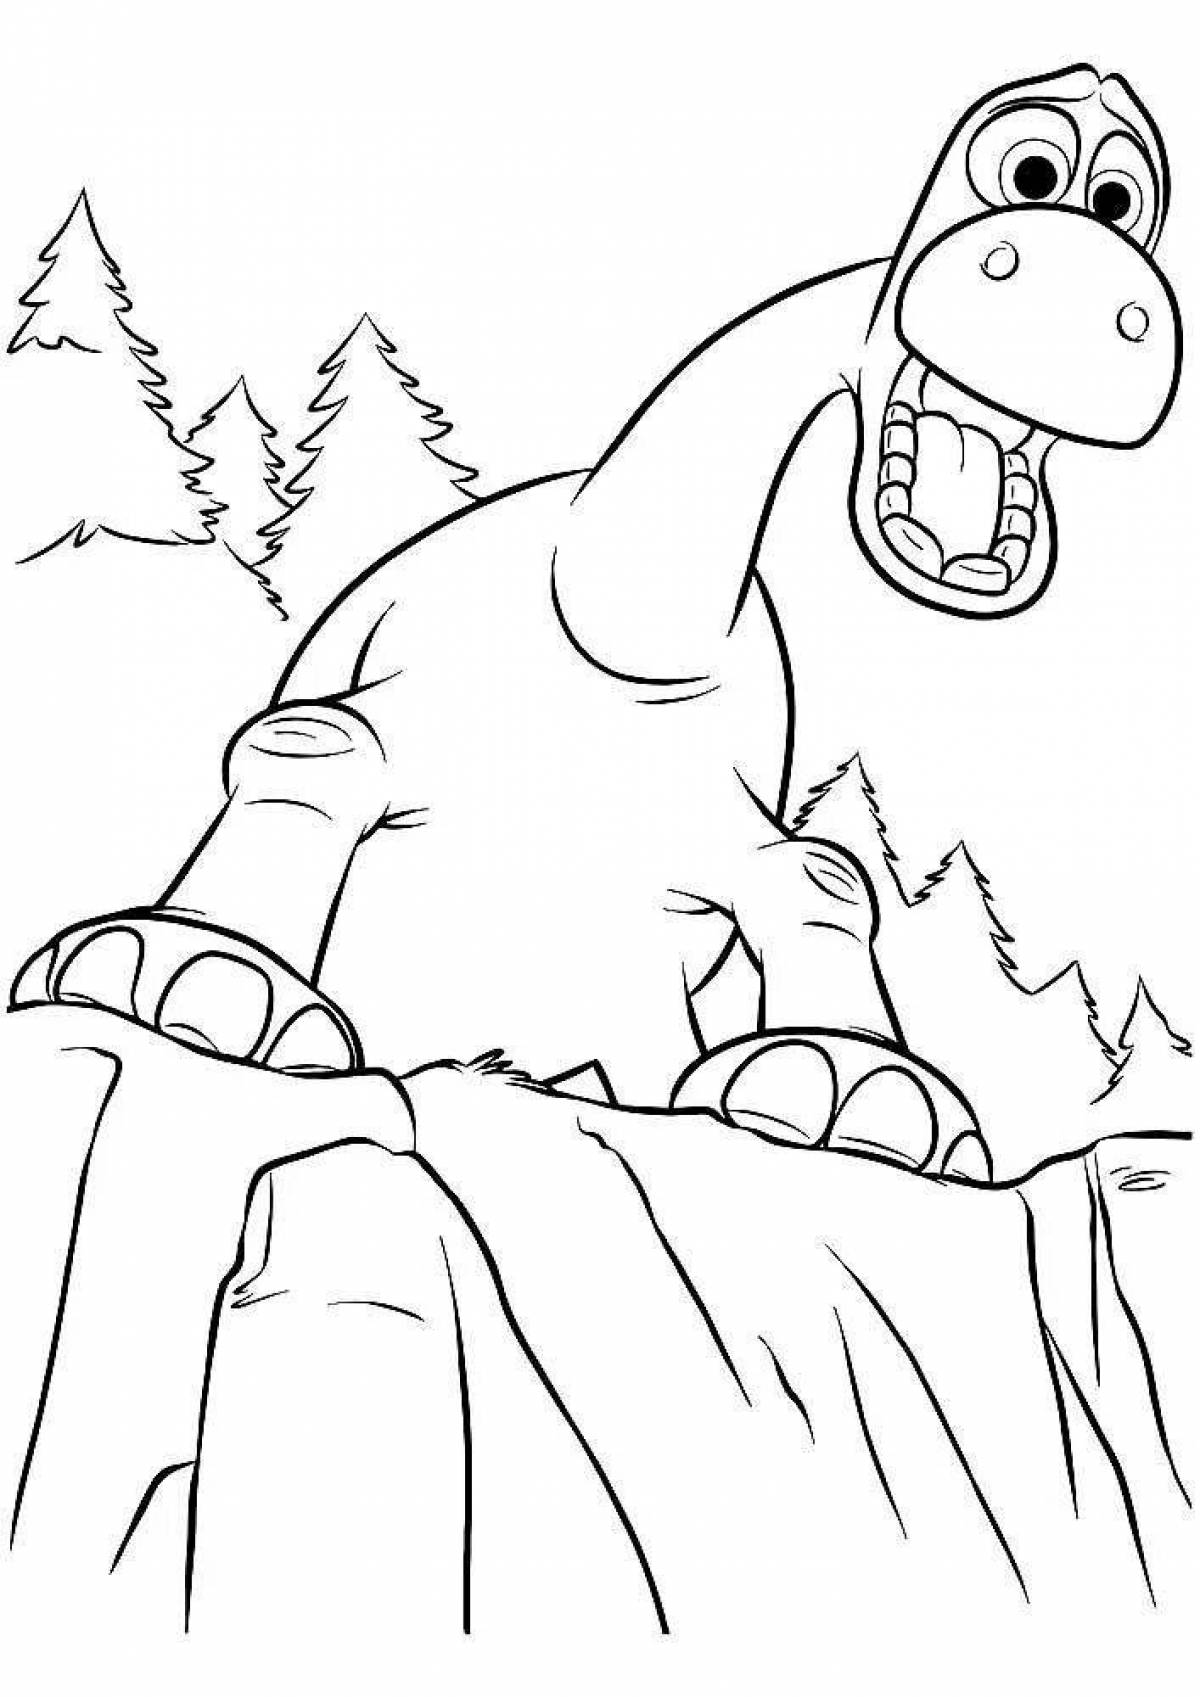 Fascinating cartoon coloring of Tarbosaurus